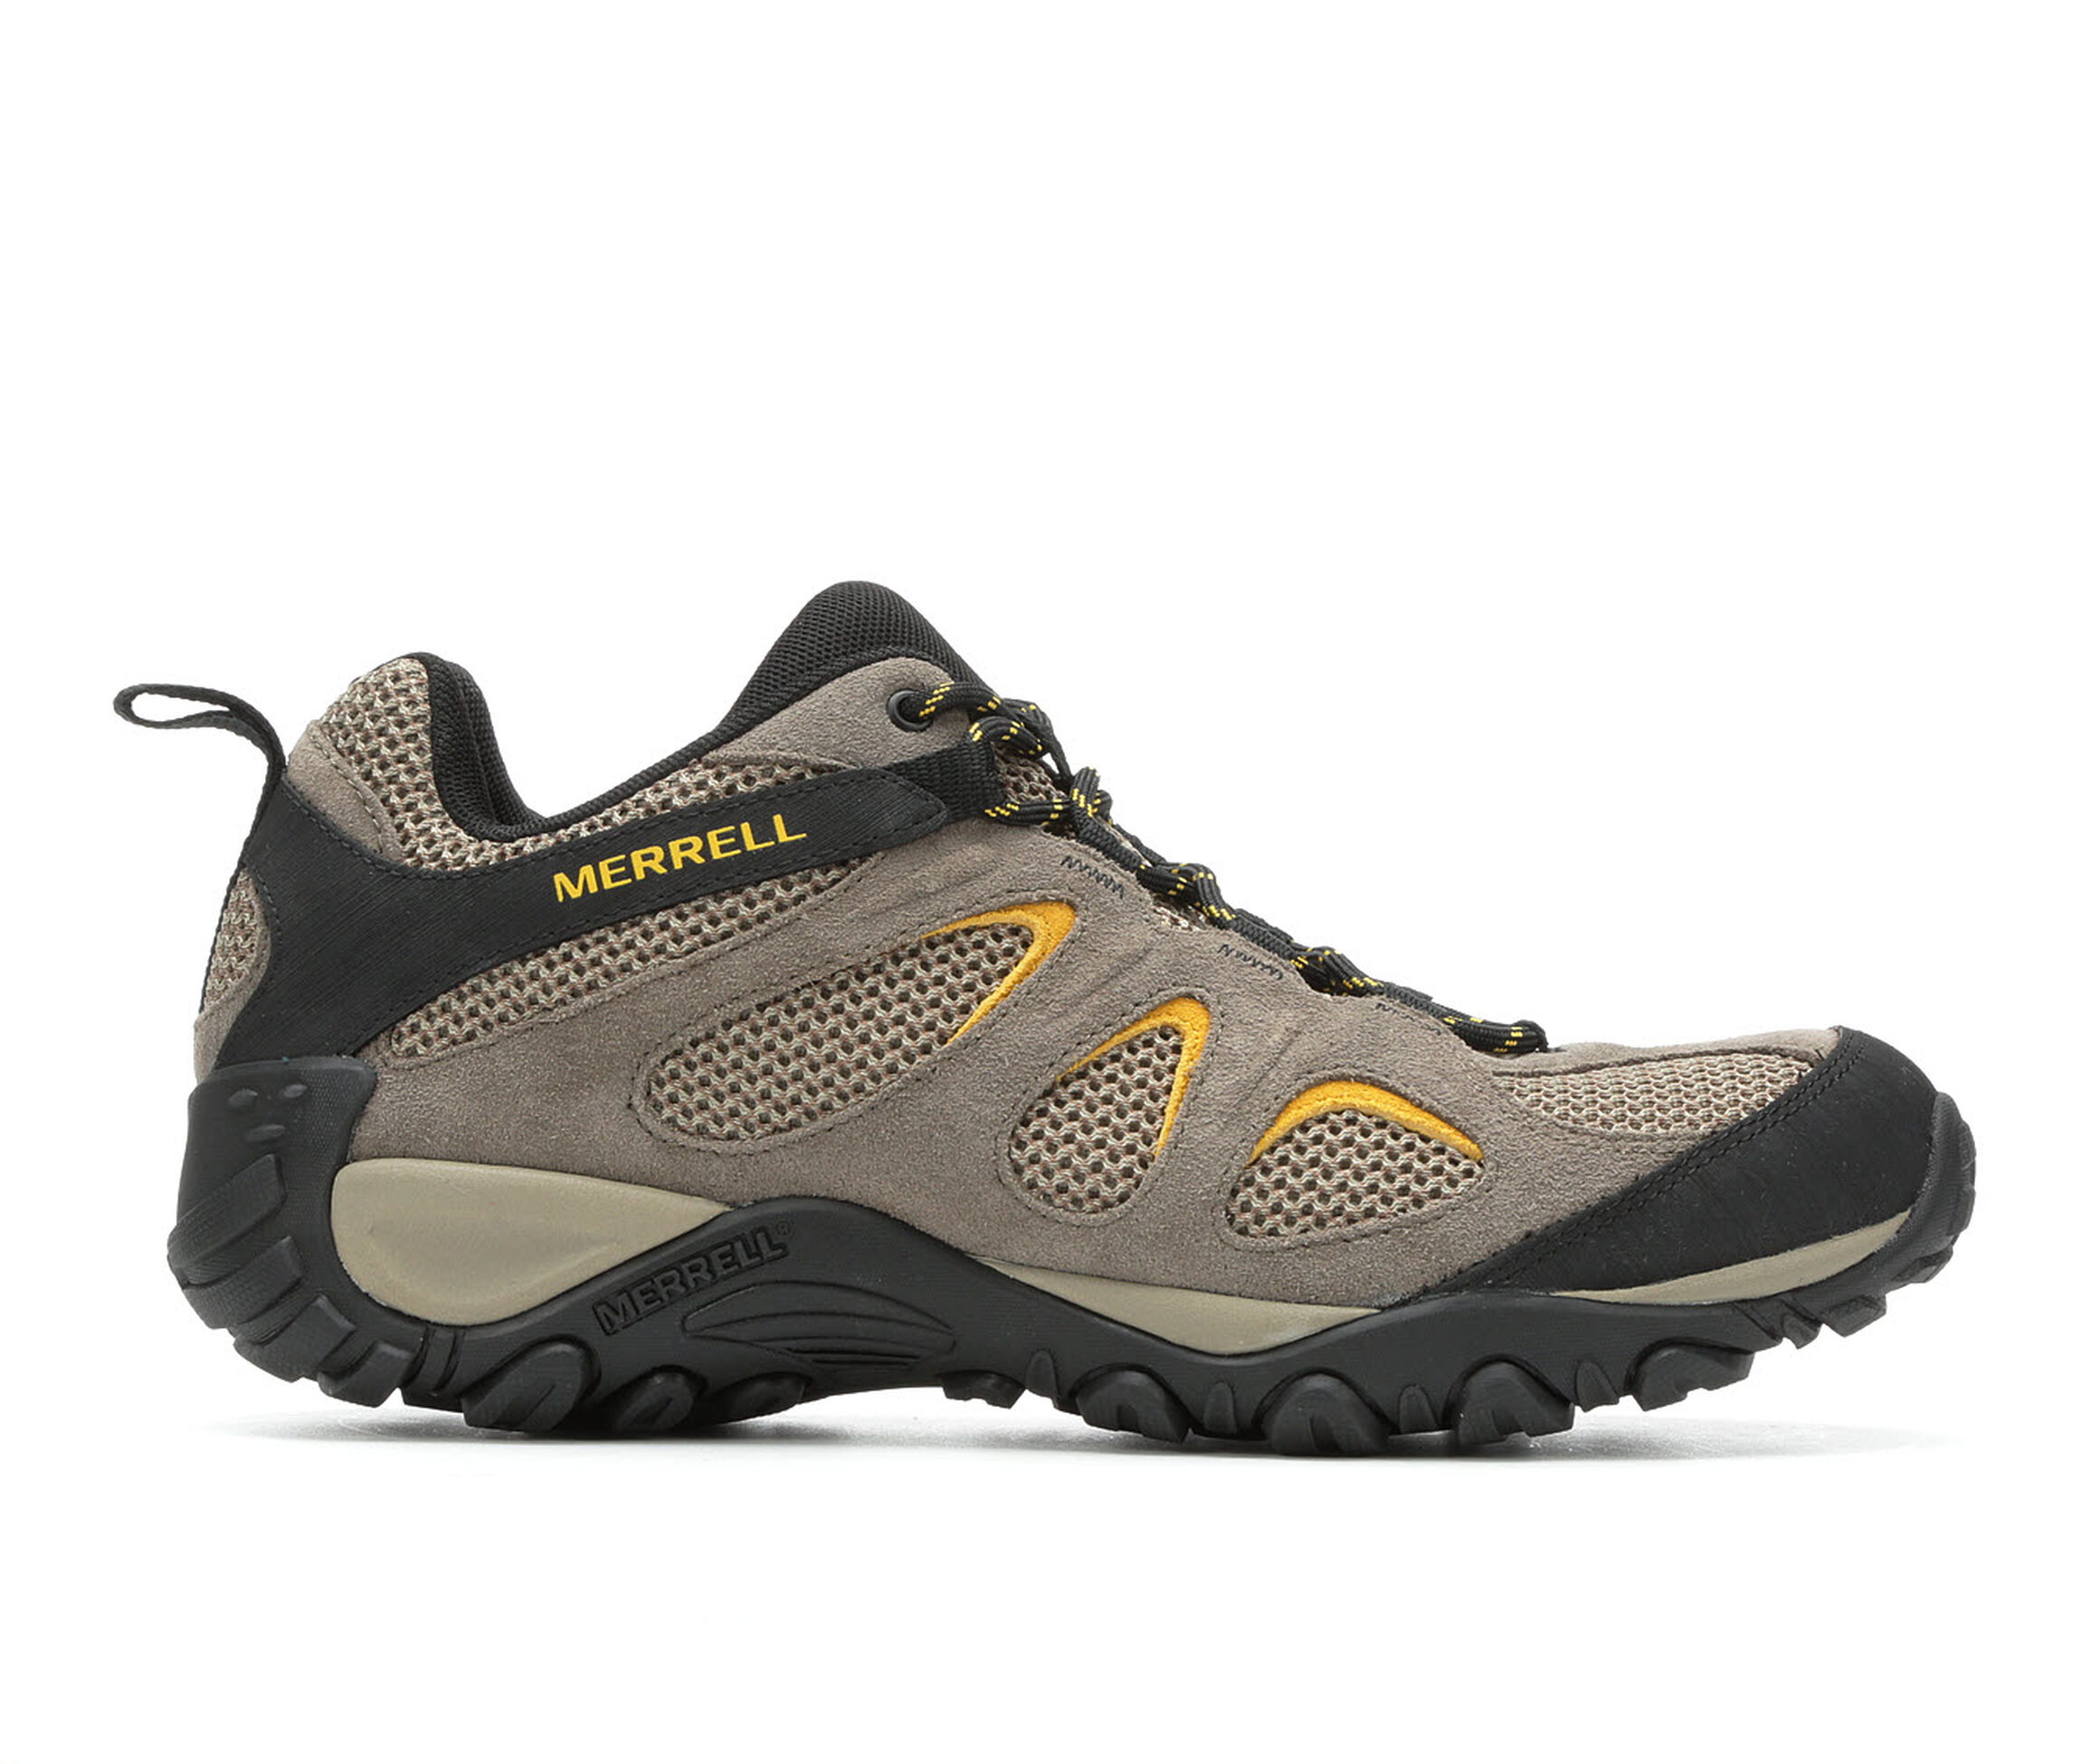 Men's Merrell Yokota Hiking Shoes